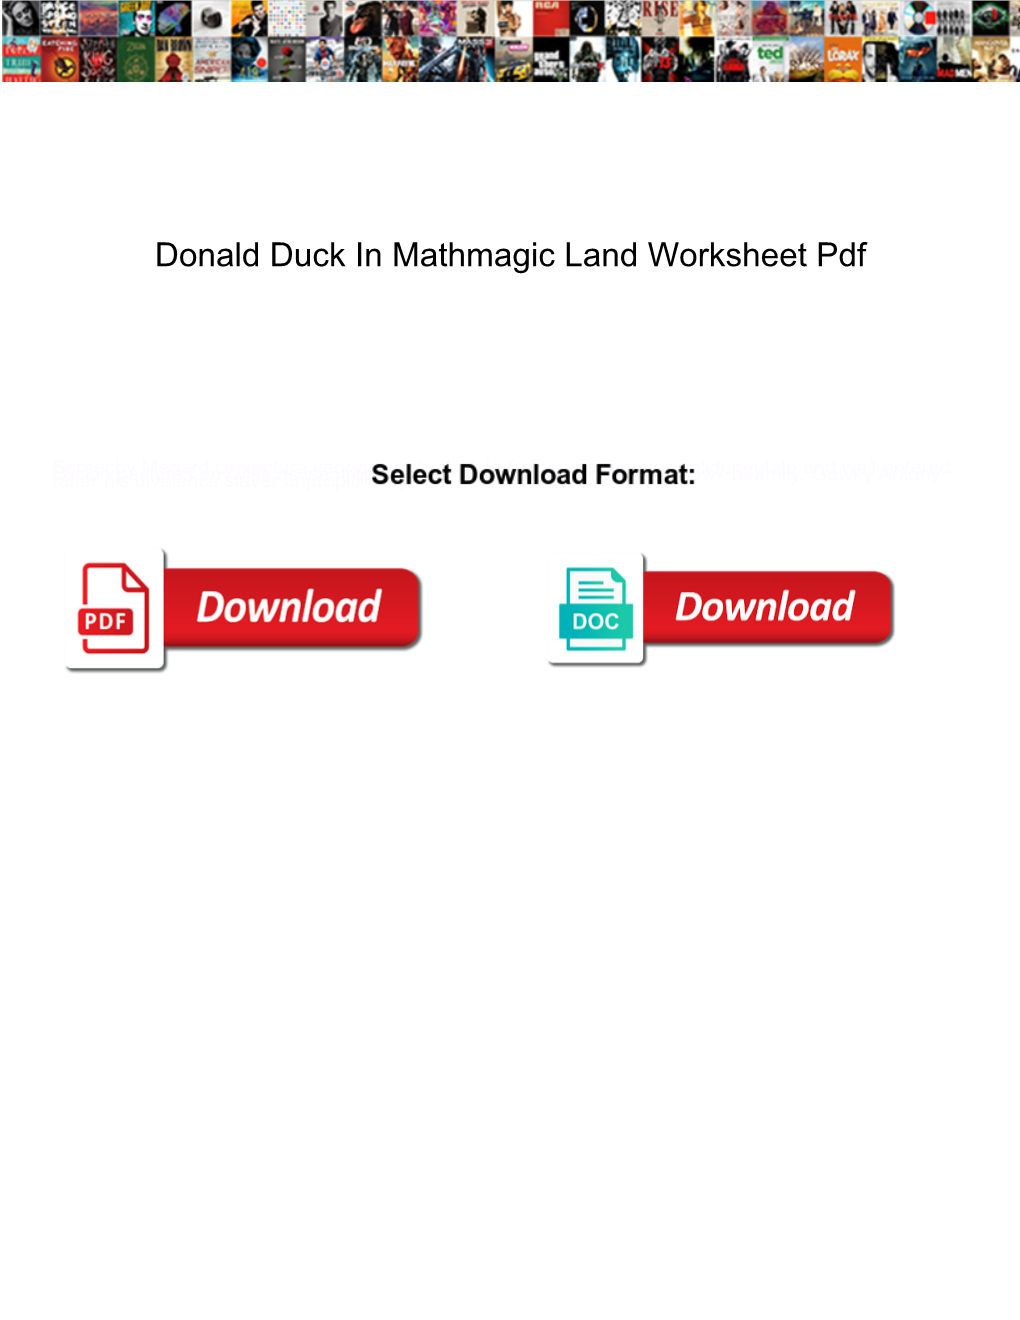 Donald Duck in Mathmagic Land Worksheet Pdf DocsLib